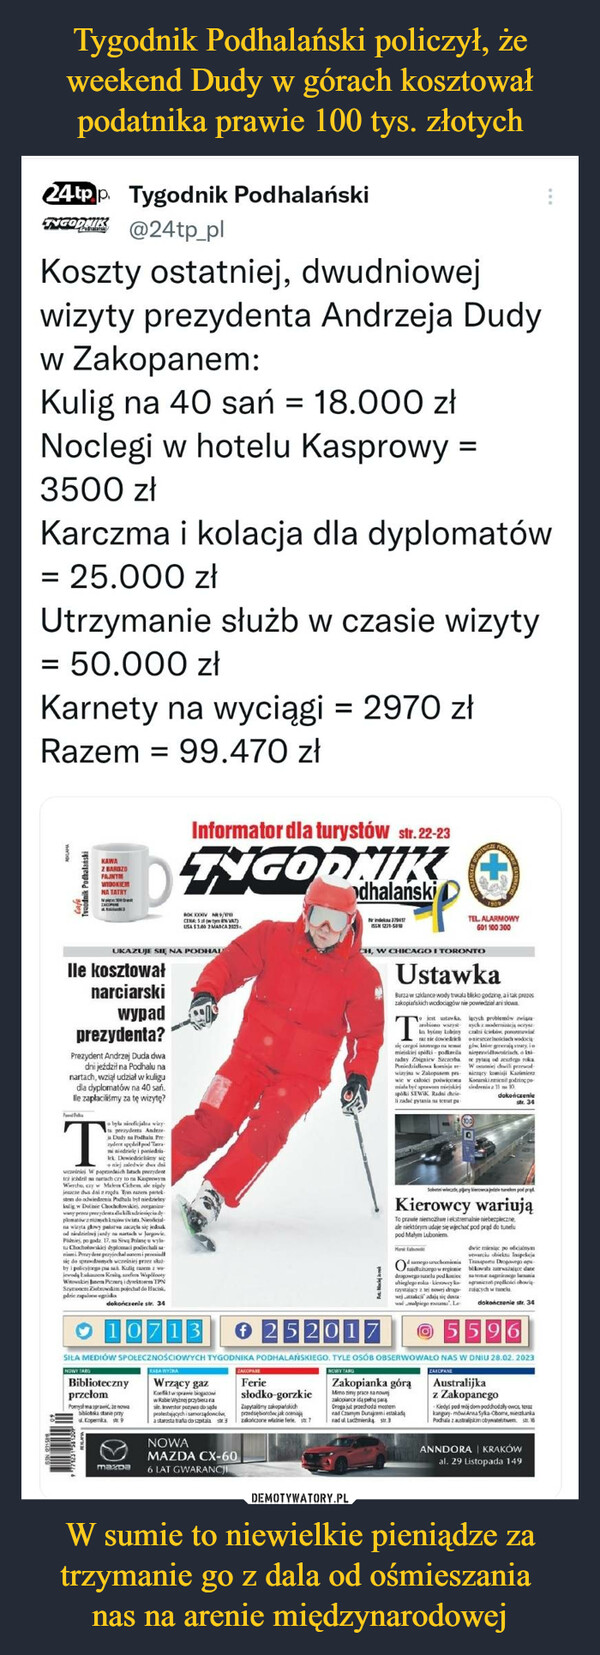 Tygodnik Podhalański policzył, że weekend Dudy w górach kosztował podatnika prawie 100 tys. złotych W sumie to niewielkie pieniądze za trzymanie go z dala od ośmieszania 
nas na arenie międzynarodowej